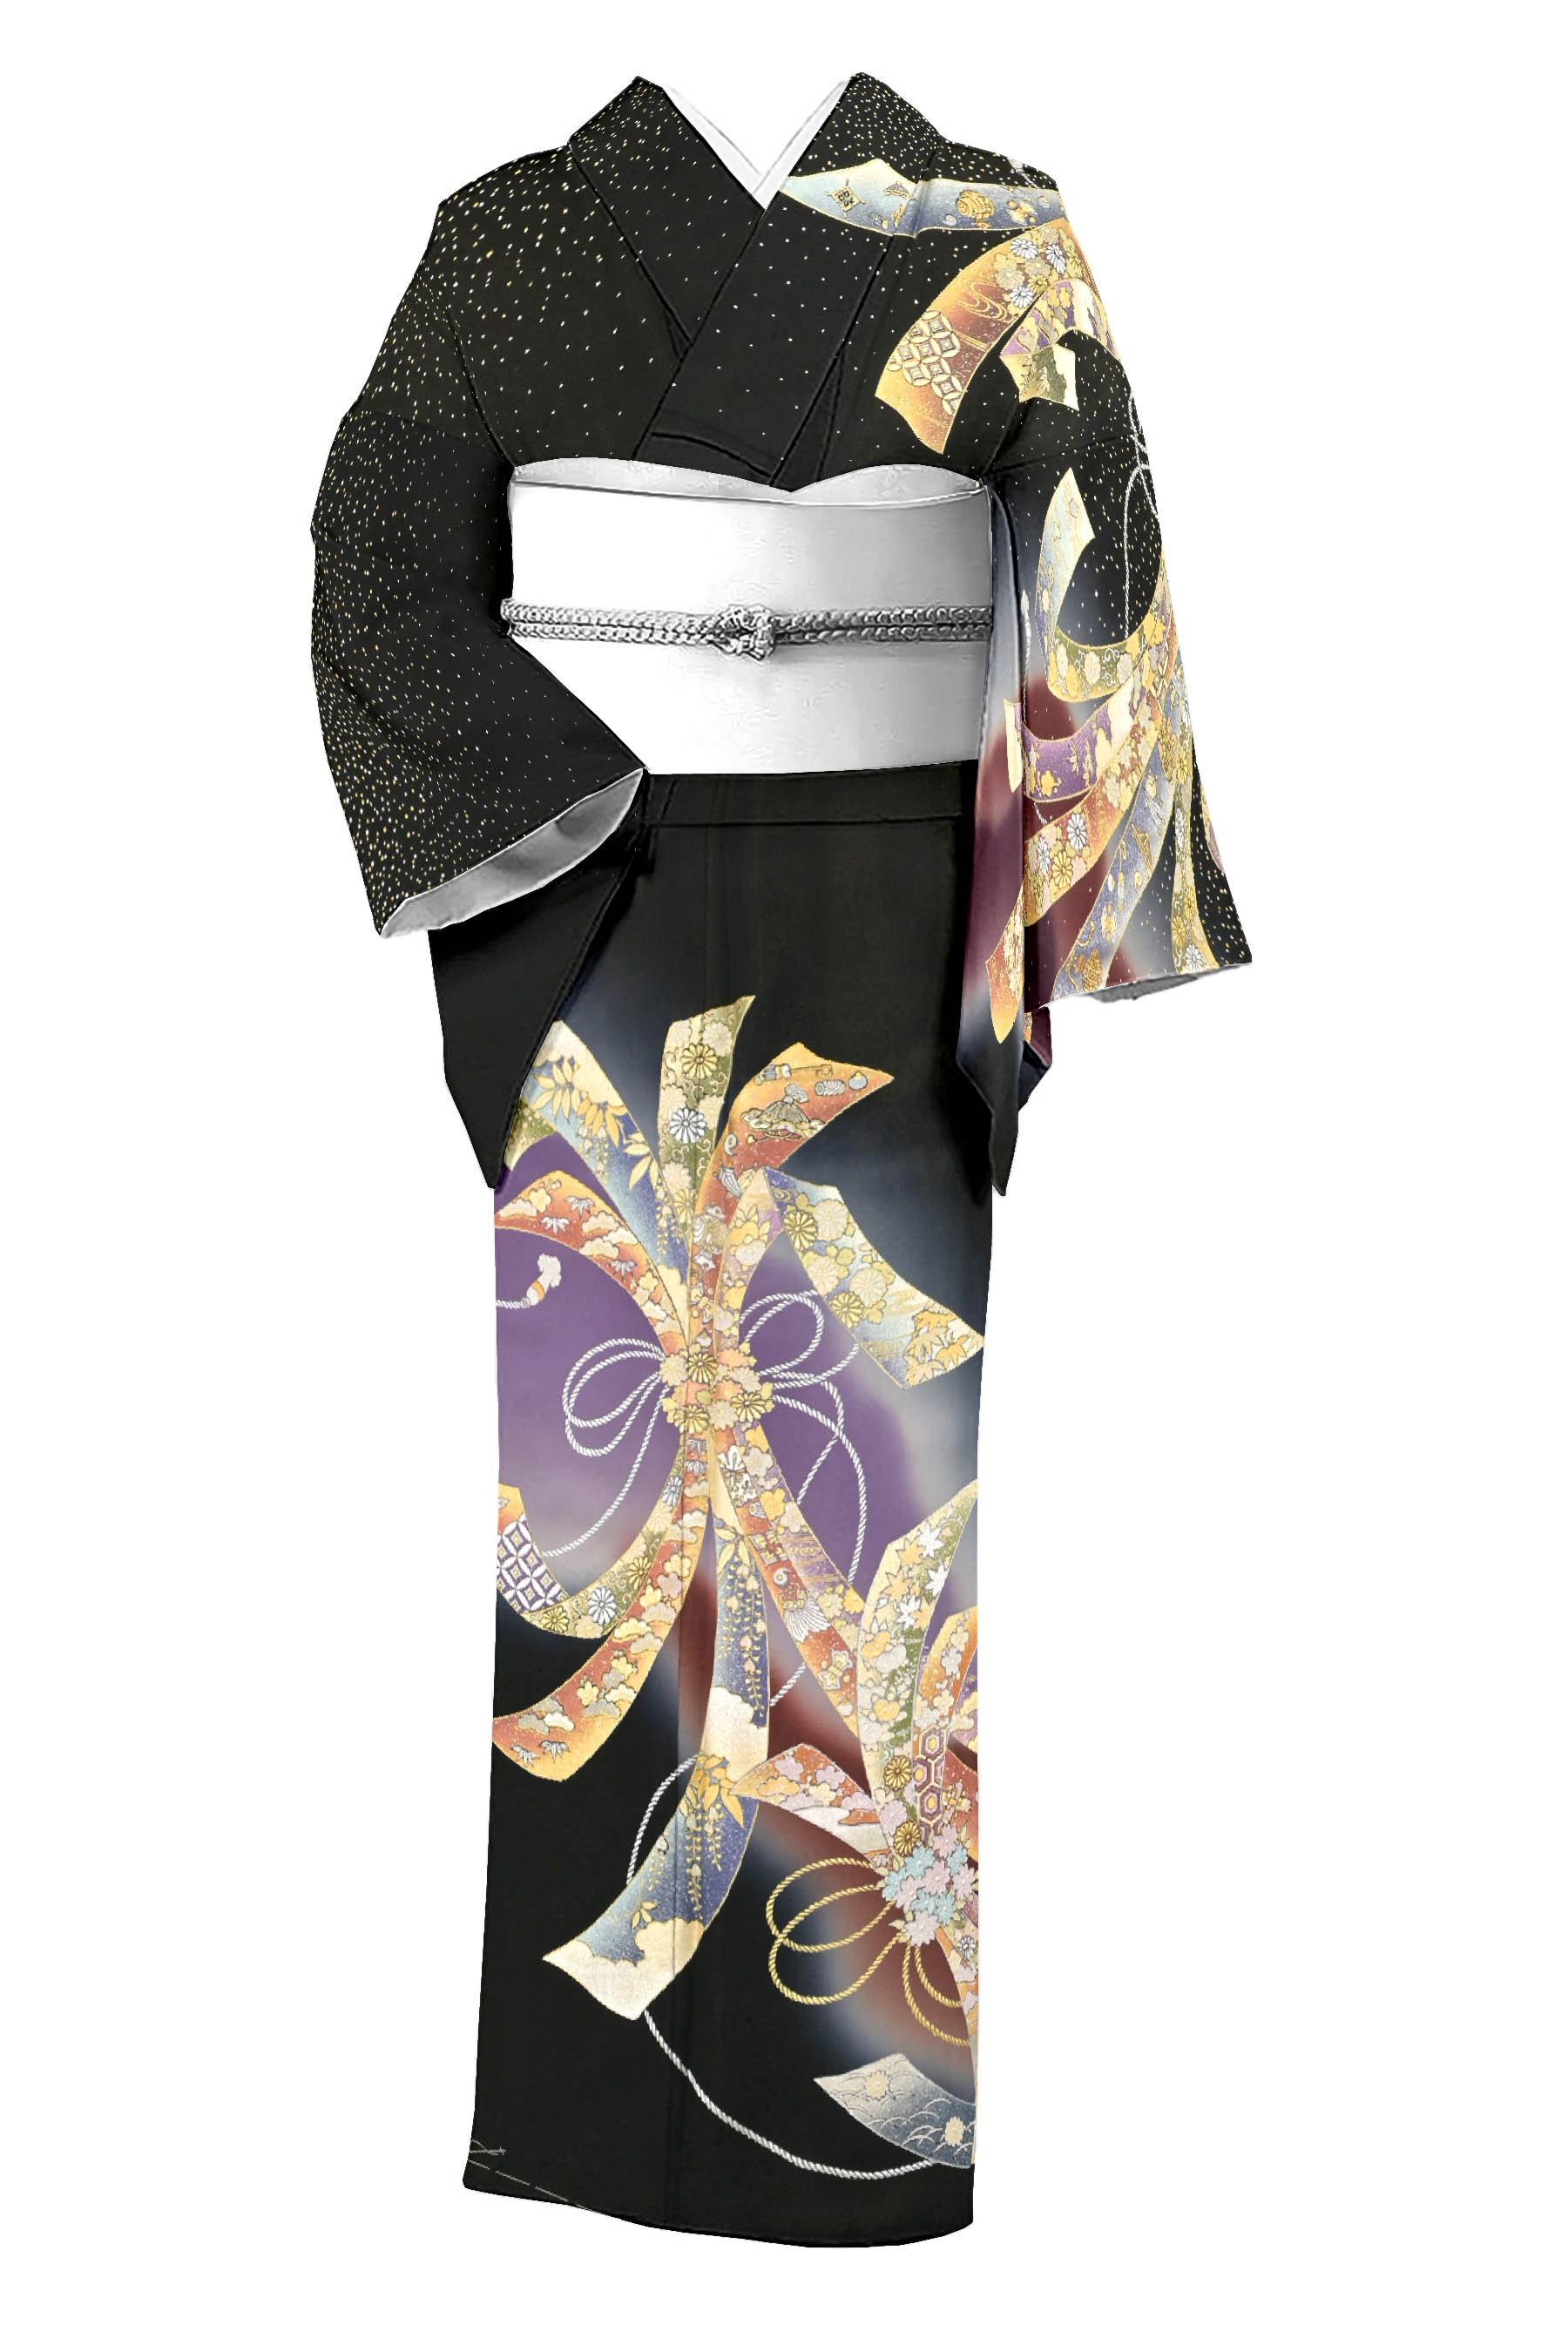 和田光正の着物・帯の一覧|京都きもの市場【日本最大級の着物通販サイト】